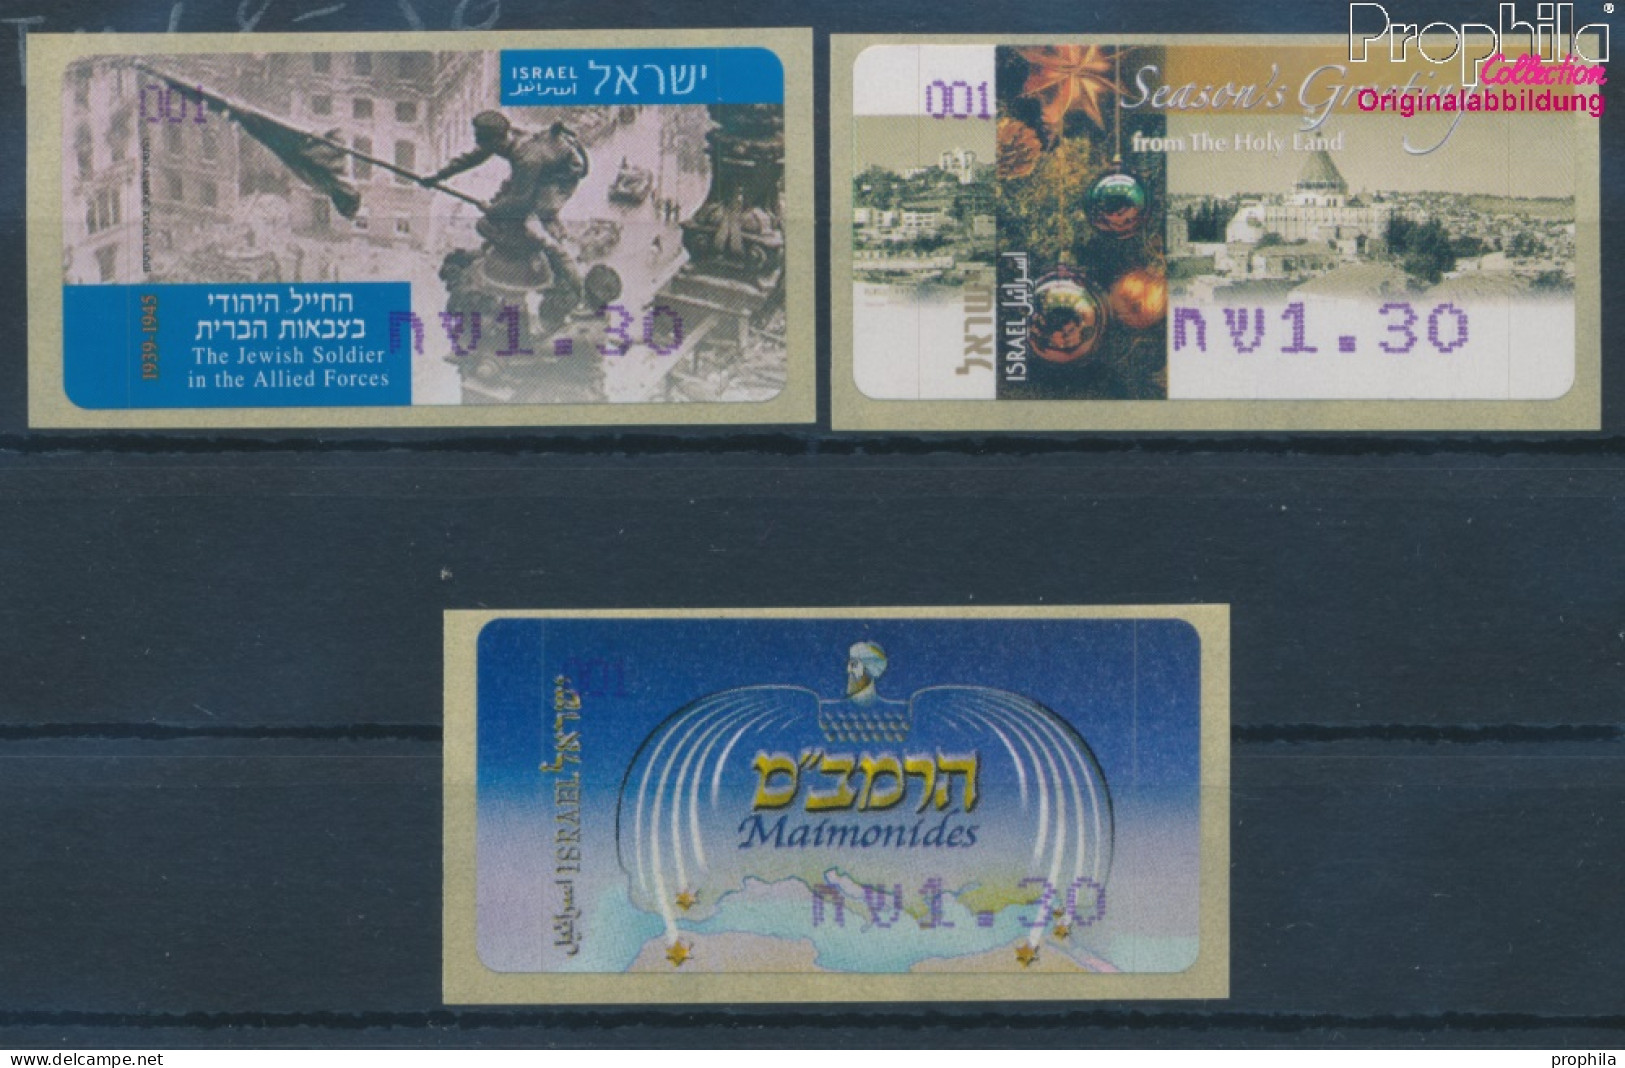 Israel ATM48-ATM50 Postfrisch 2005 Automatenmarken (10369170 - Automatenmarken (Frama)